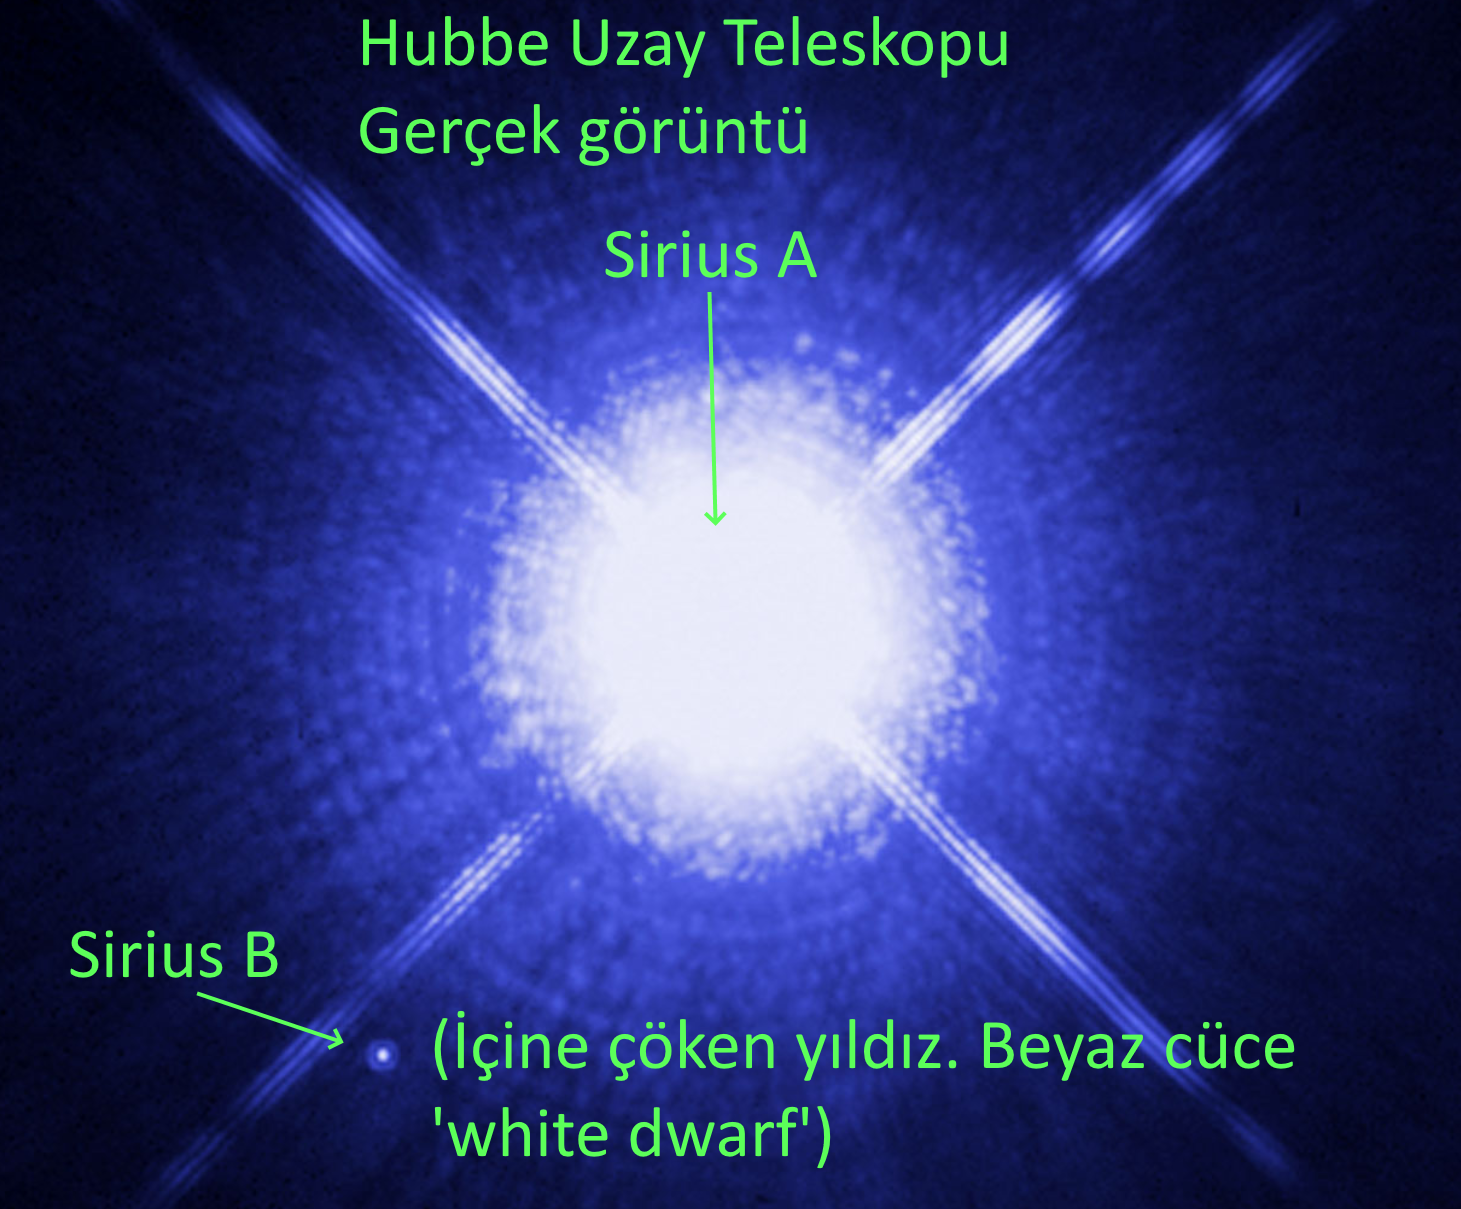 Sirius A B cift yildiz sistemi Kuran Sirius B yildizi icine coken yildizi hubble uzay teleskopu